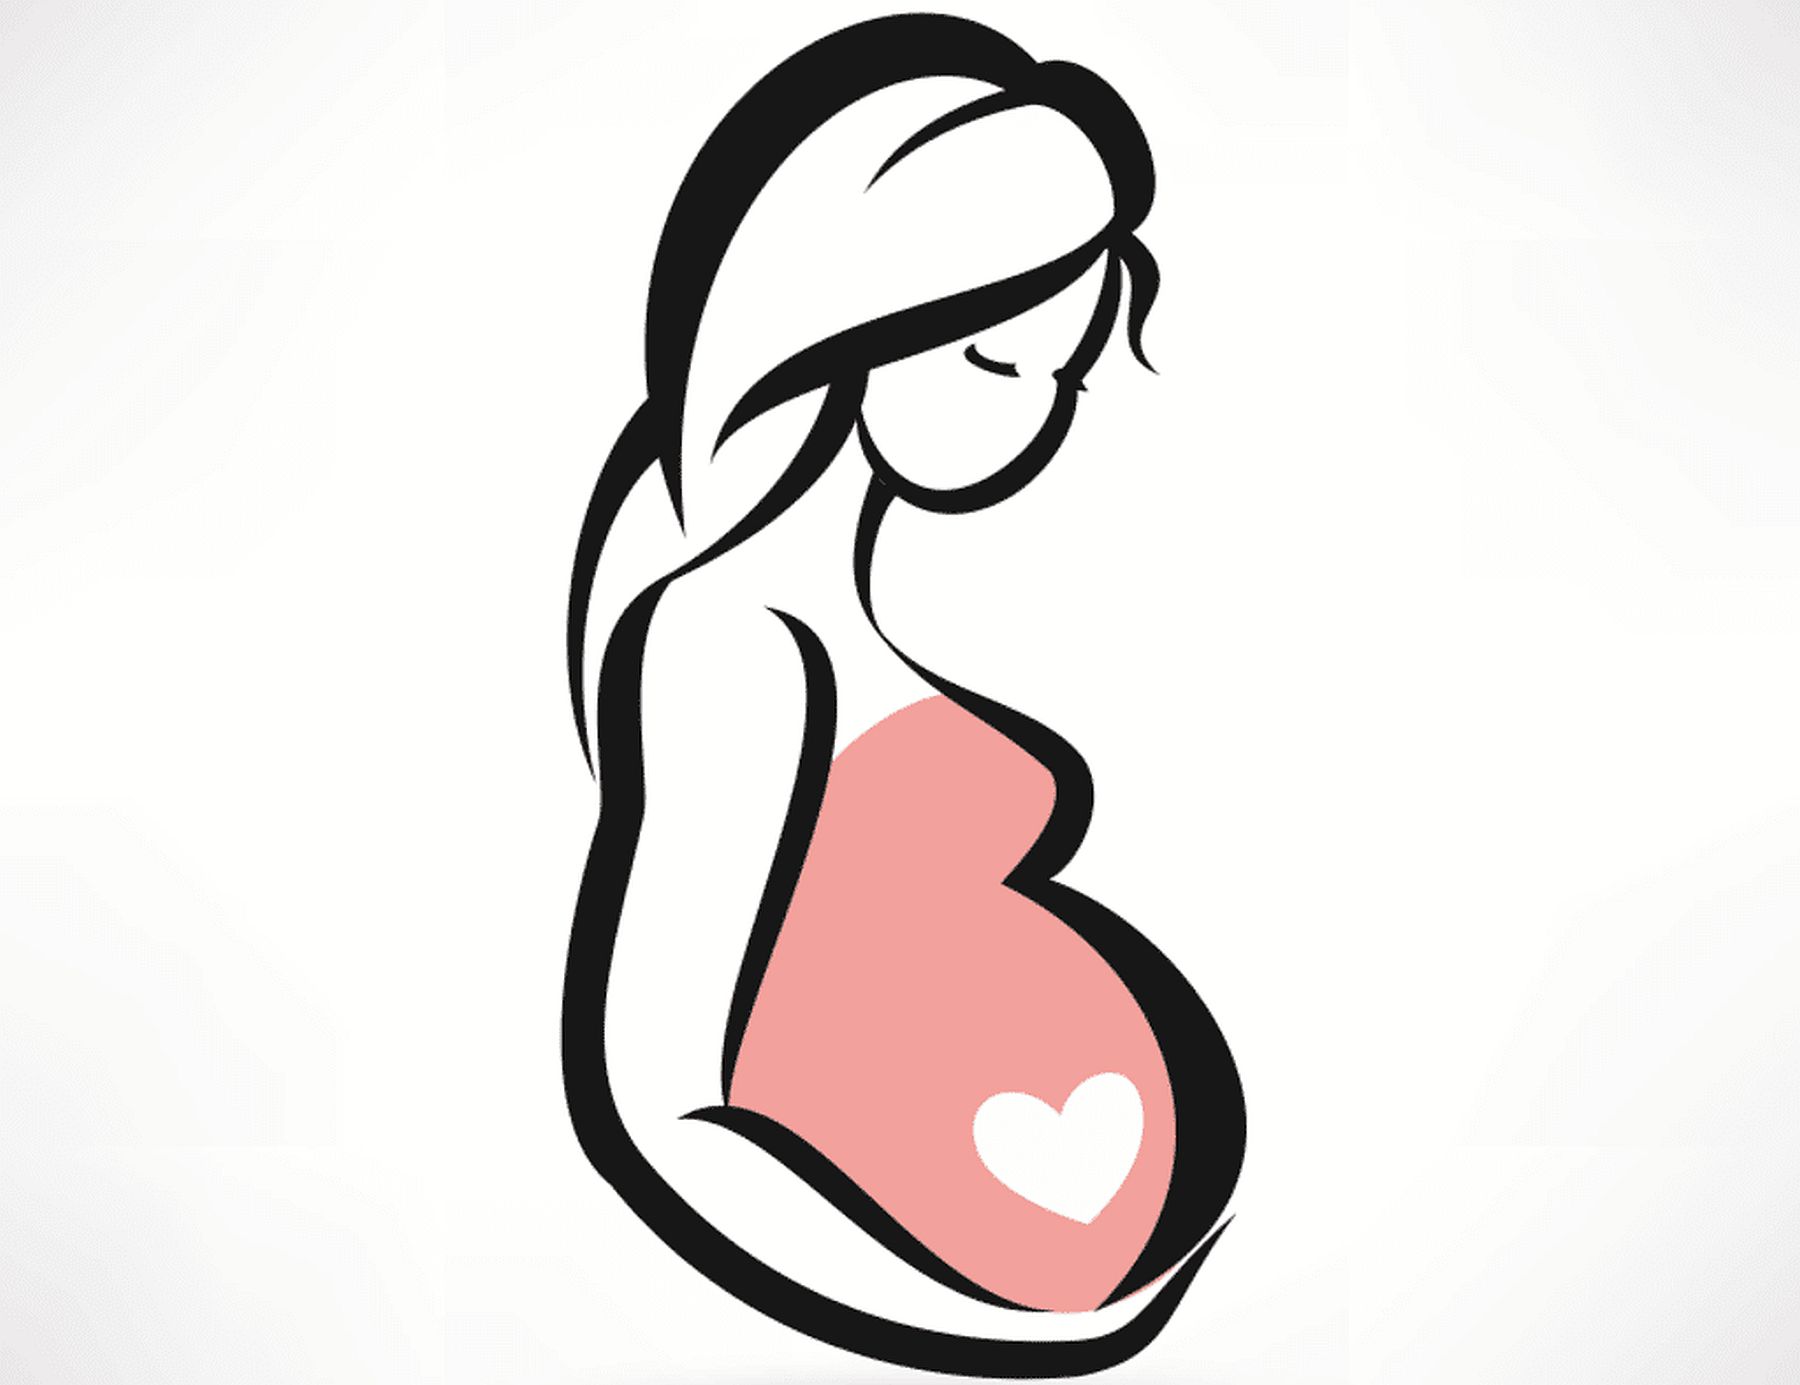 Májusban is indít szülésre felkészítő tanfolyamot az Egészségfejlesztési Iroda